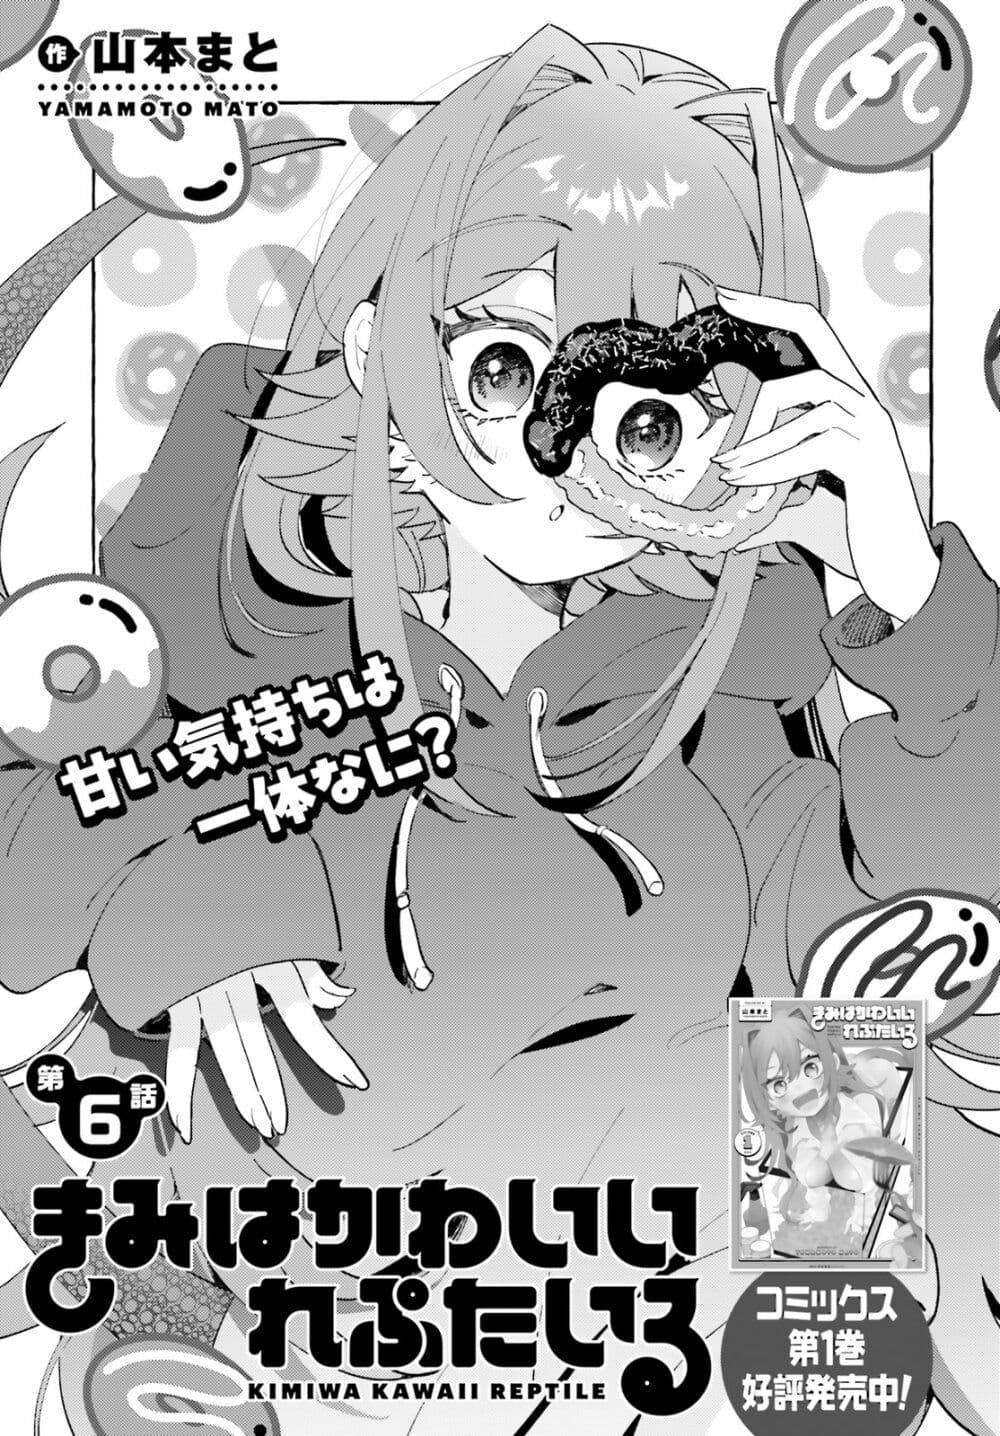 อ่านมังงะ Kimi wa Kawaii Reptile ตอนที่ 6/0.jpg